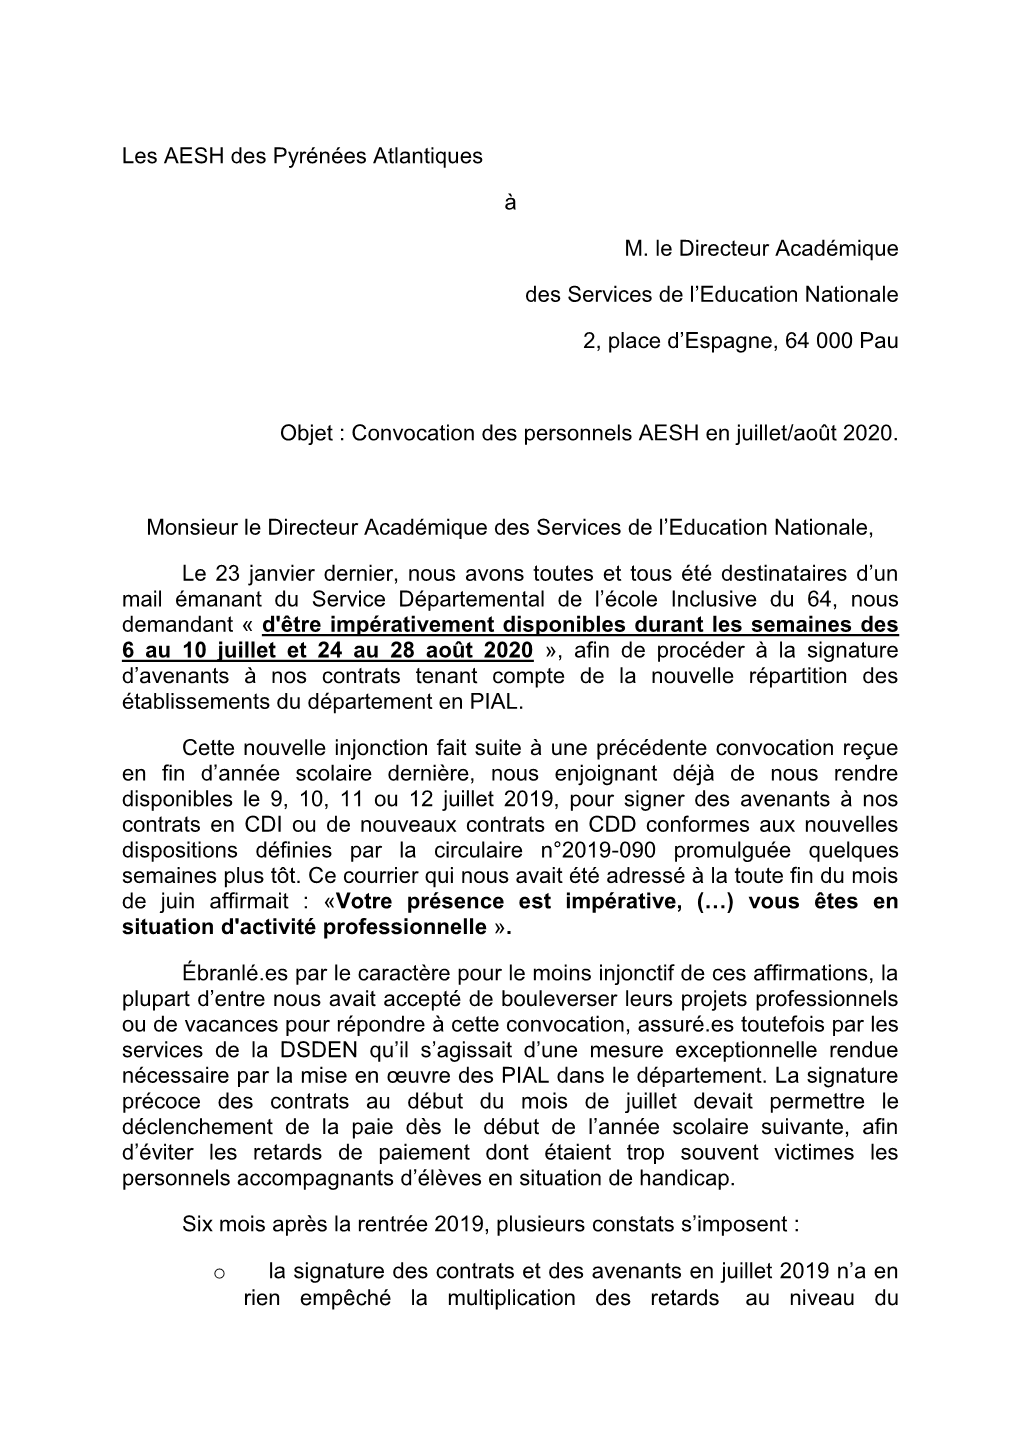 Les AESH Des Pyrénées Atlantiques À M. Le Directeur Académique Des